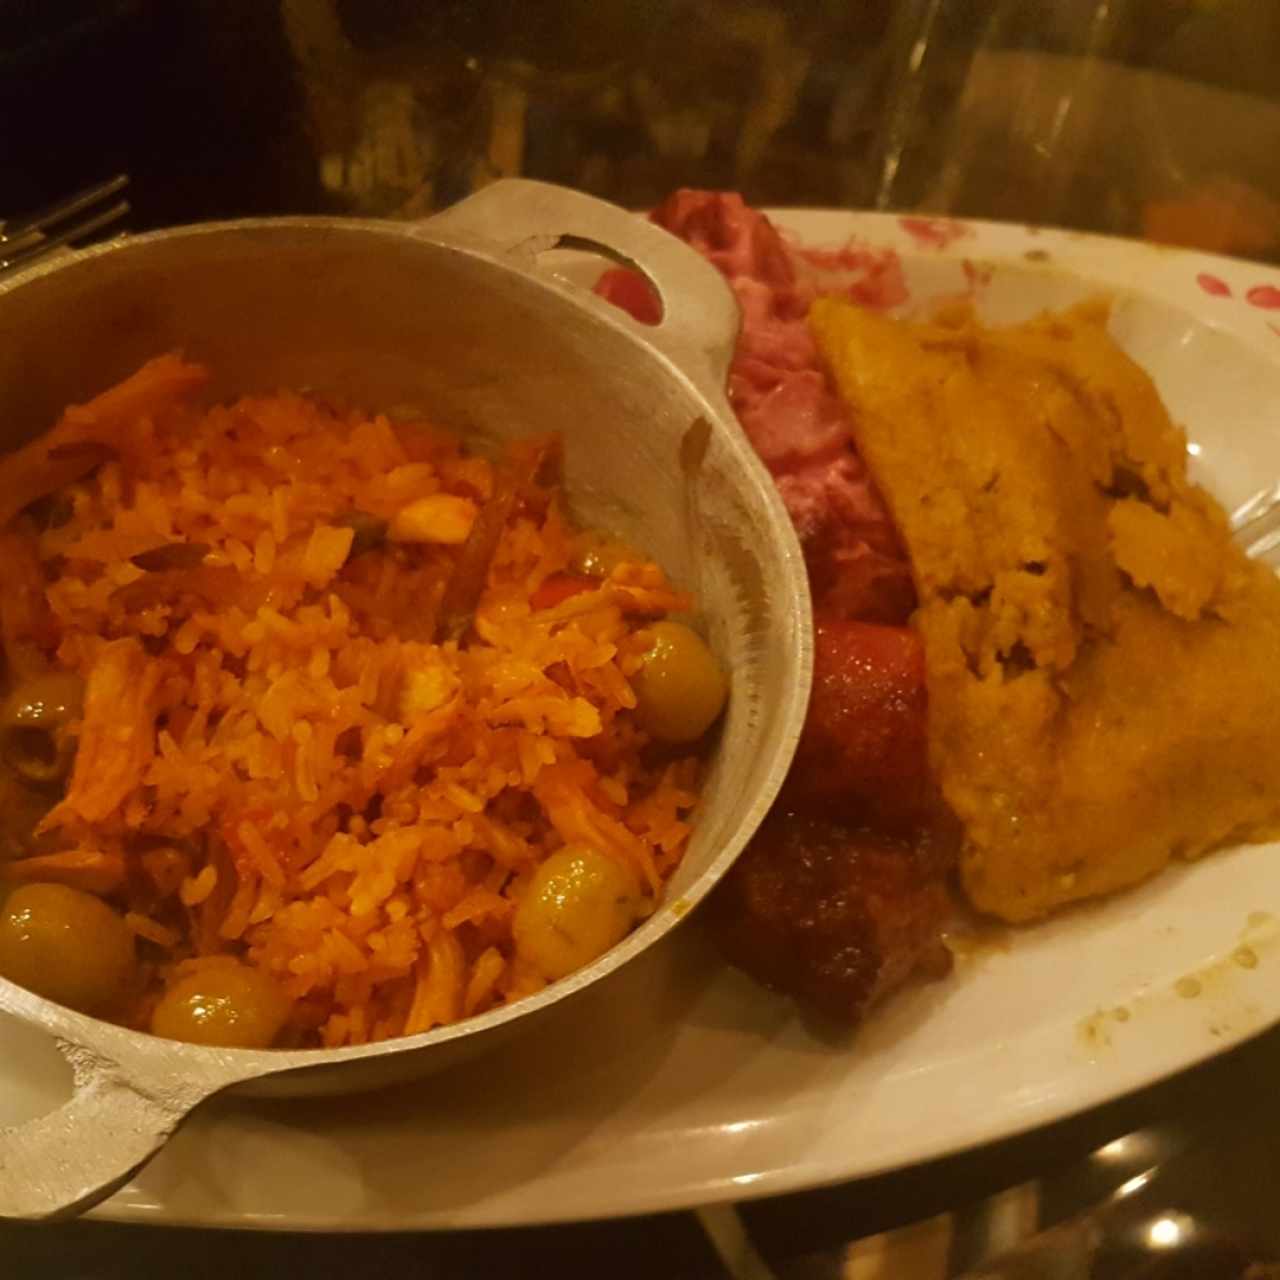 arroz con pollo, ensalada de feria y tamal de olla